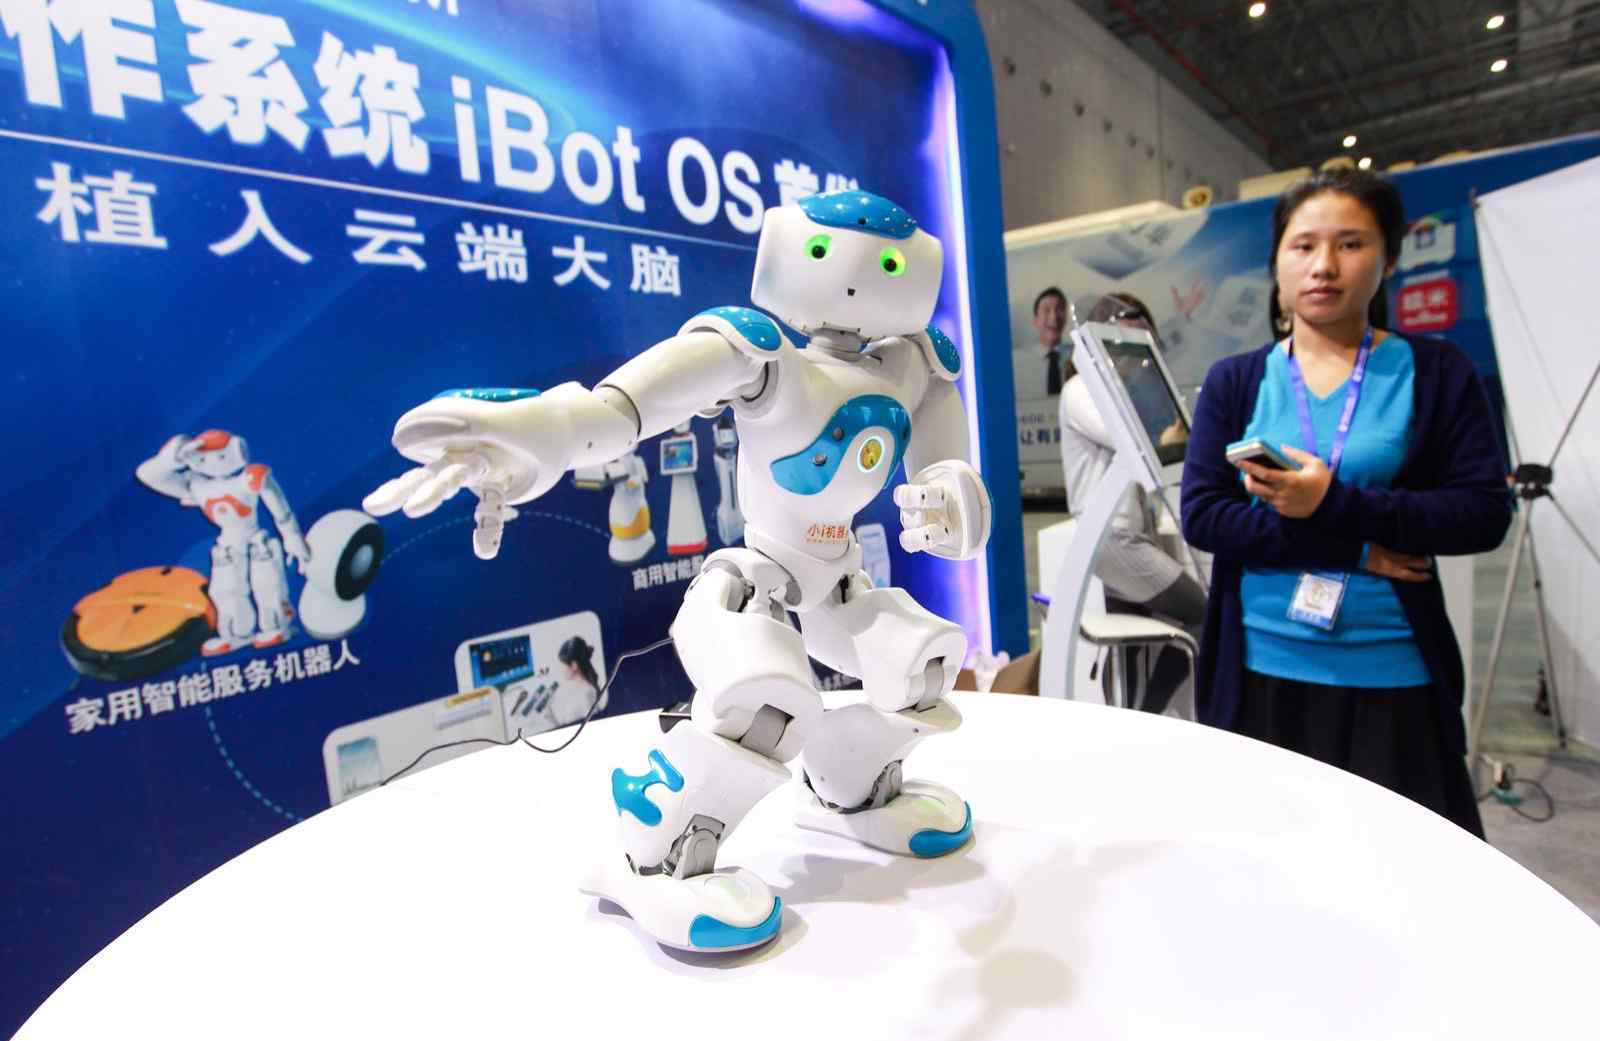 机器人之父 小i机器人创始人袁辉 十几年坚守终成中国机器人之父